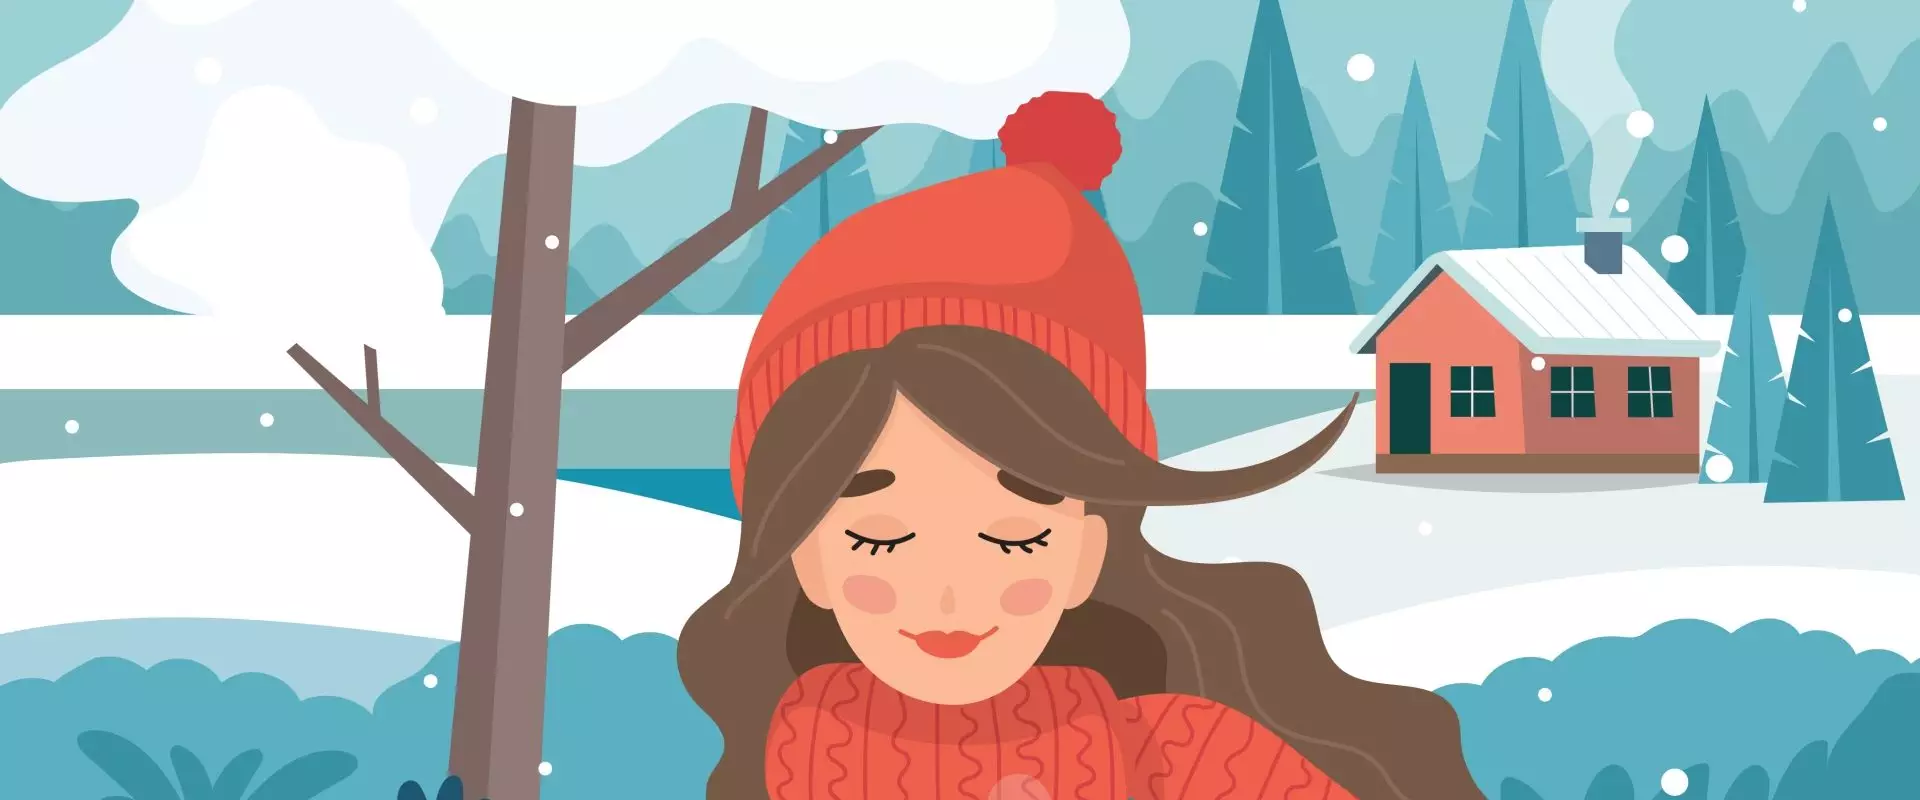 Dobre wei qi w zimie – jak wzmocnić odporność według medycyny chińskiej? Ilustracja przedstawiająca dziewczynę w czerwonej czapce i szaliku z kubkiem gorącej herbaty w ręku w otoczeniu zimowego krajobrazu.